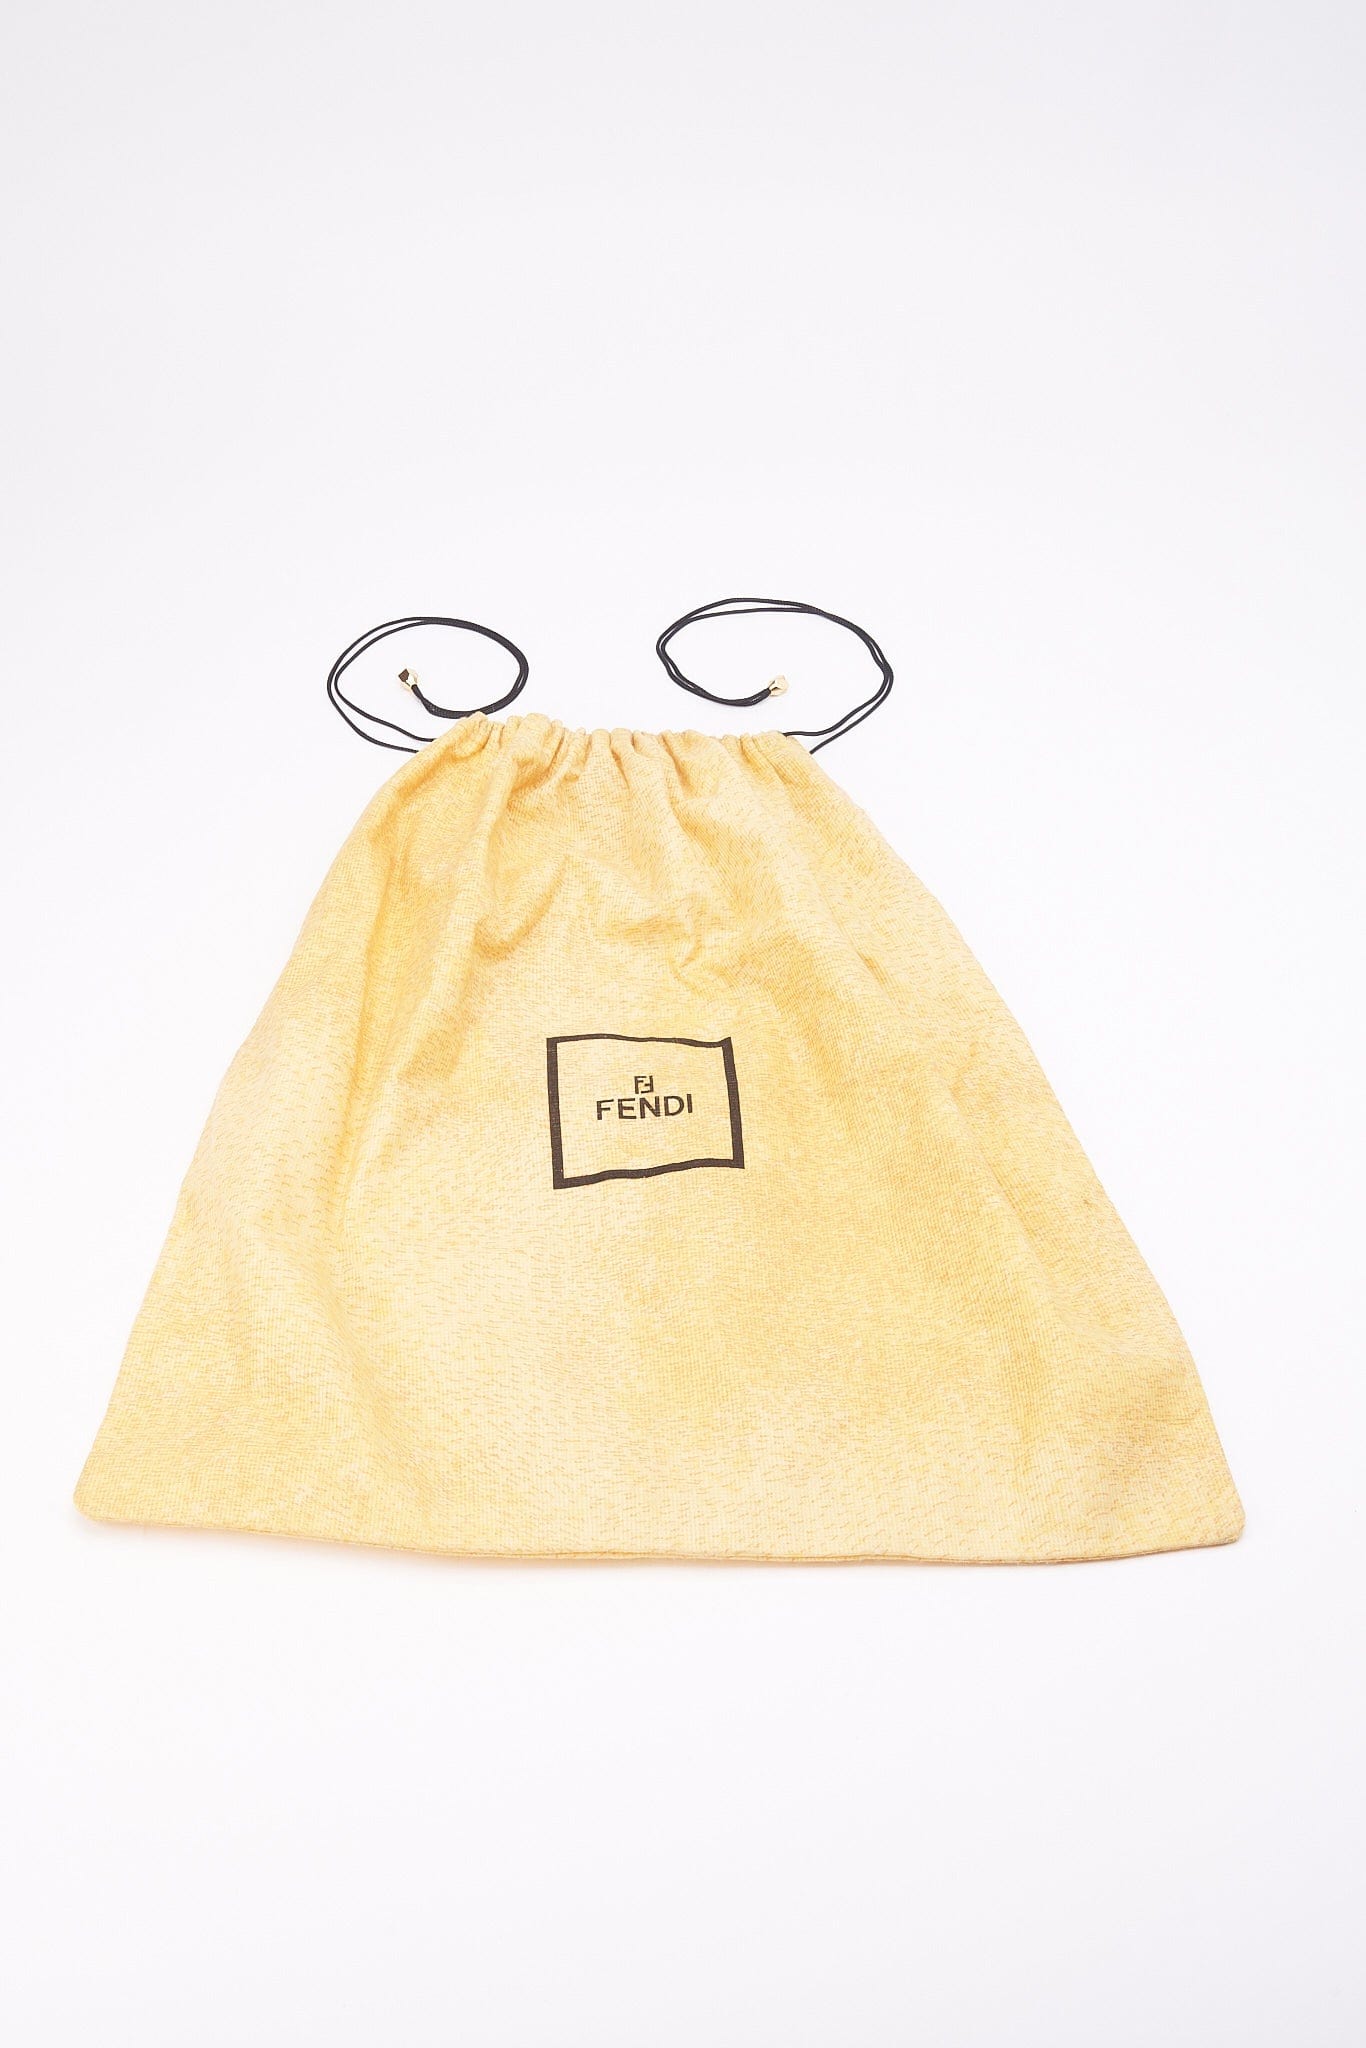 Fendi Vintage Shoulder Bag in Animal Print Calf Hair